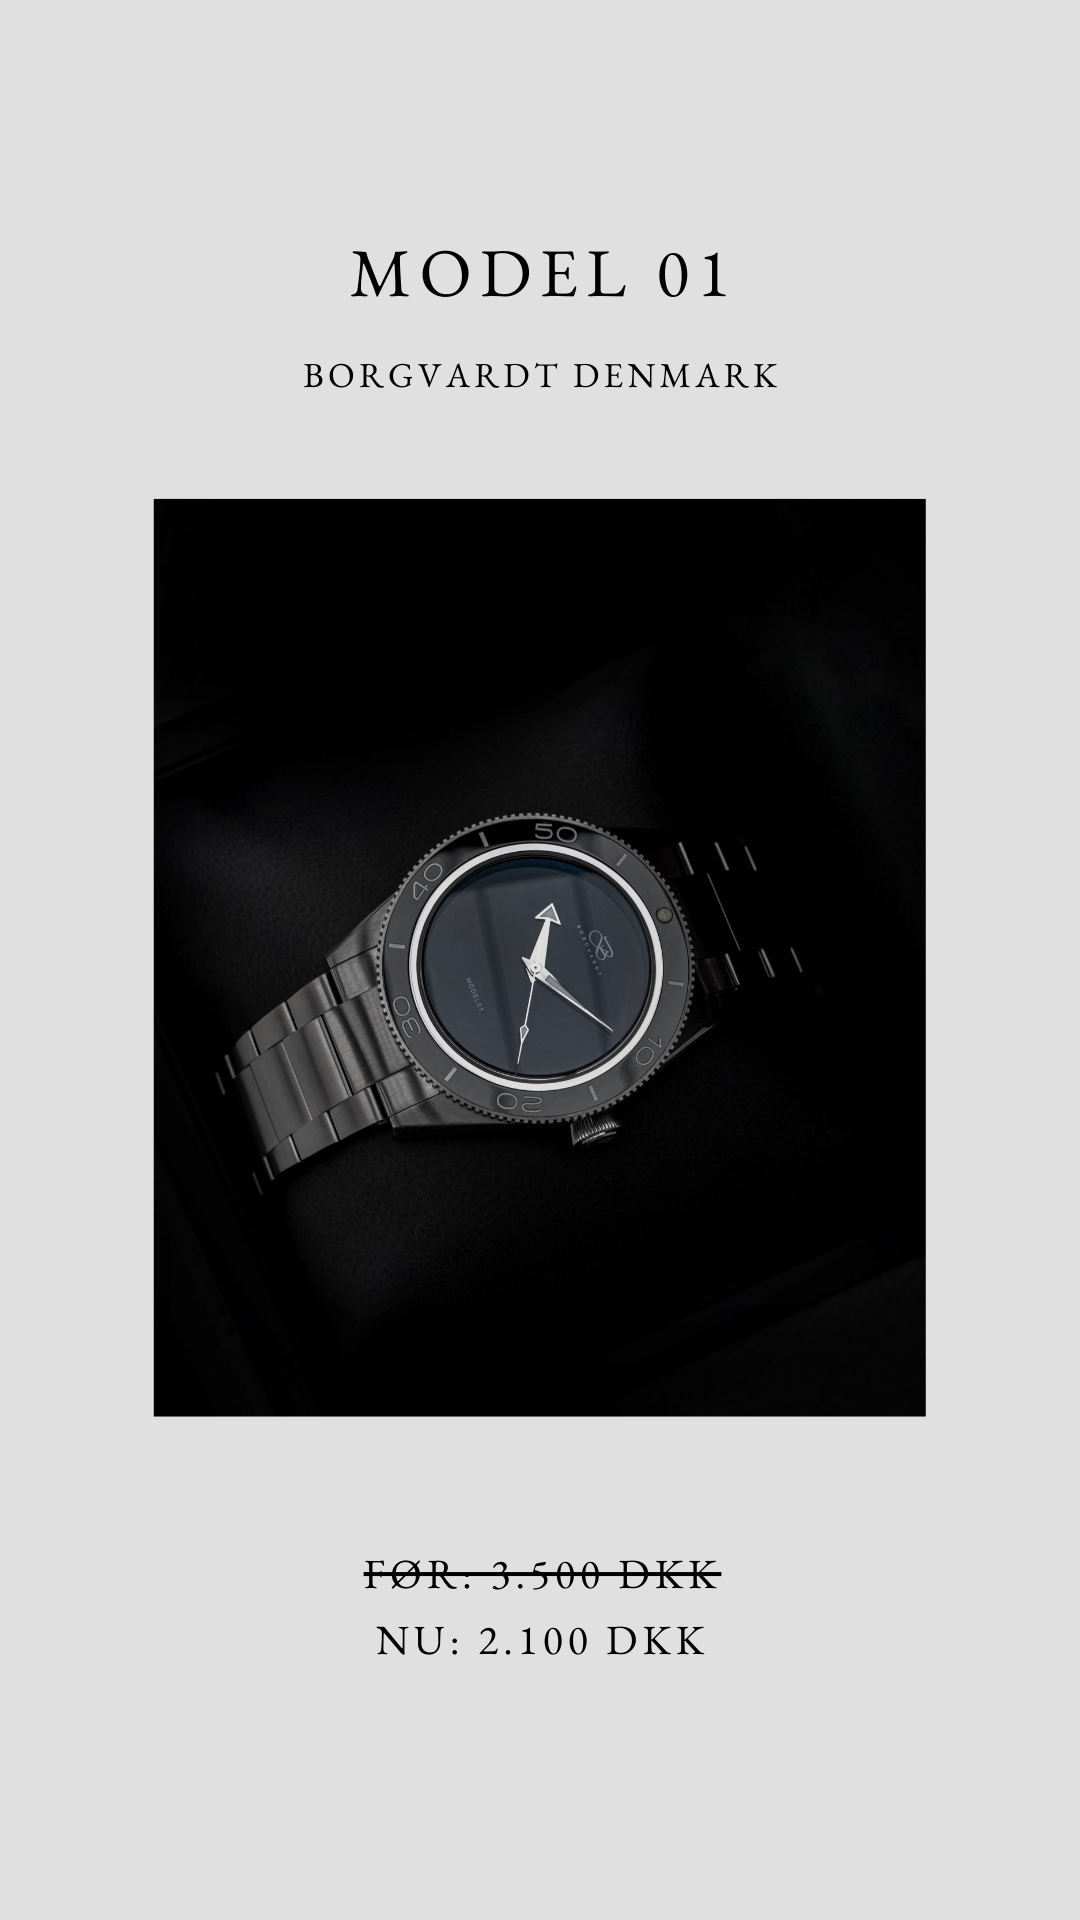 Deal of the week (week 14) - Borgvardt model 01 watch